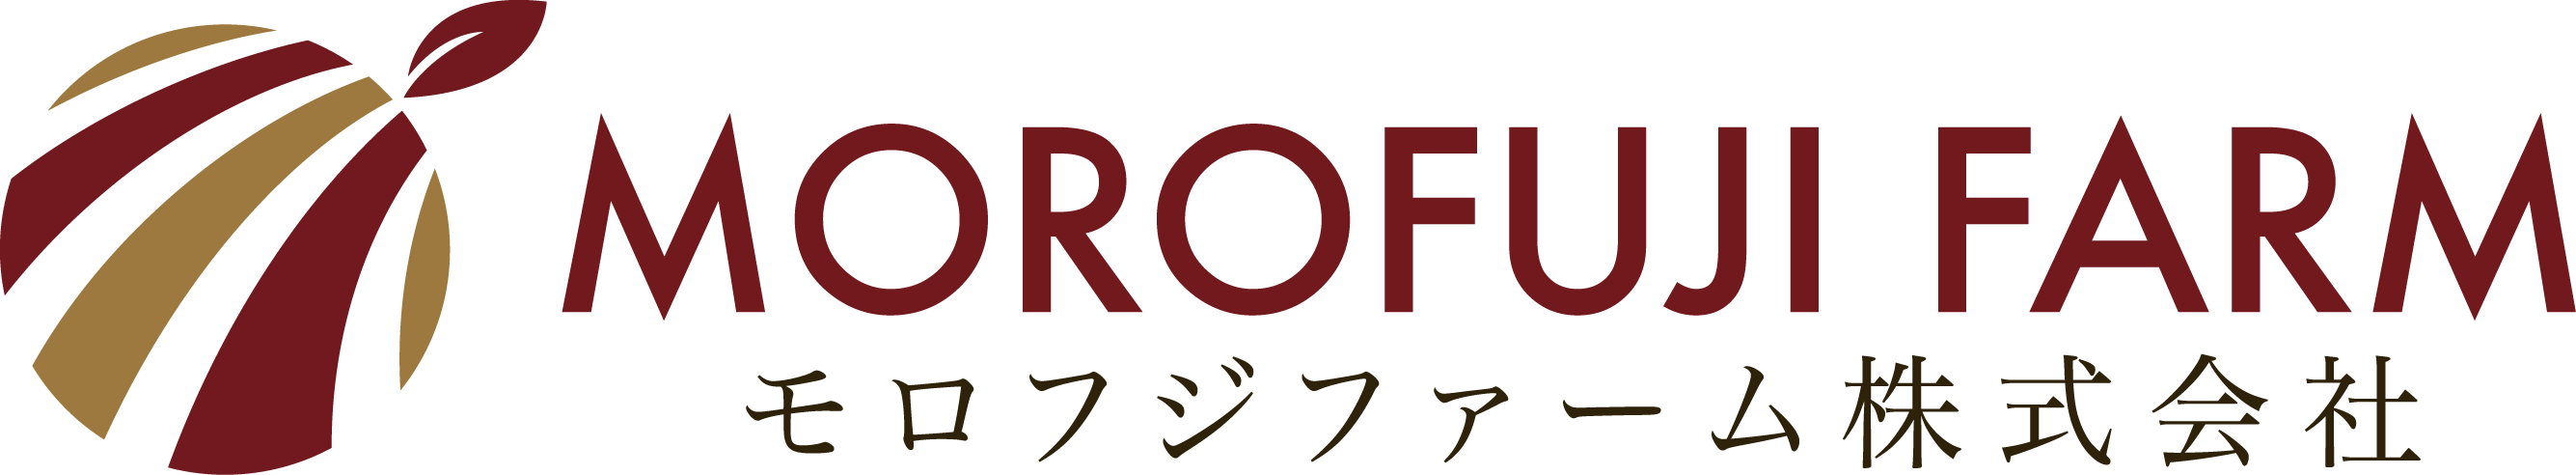 モロフジファームは九州の美味しいを日本全国へお届けします。